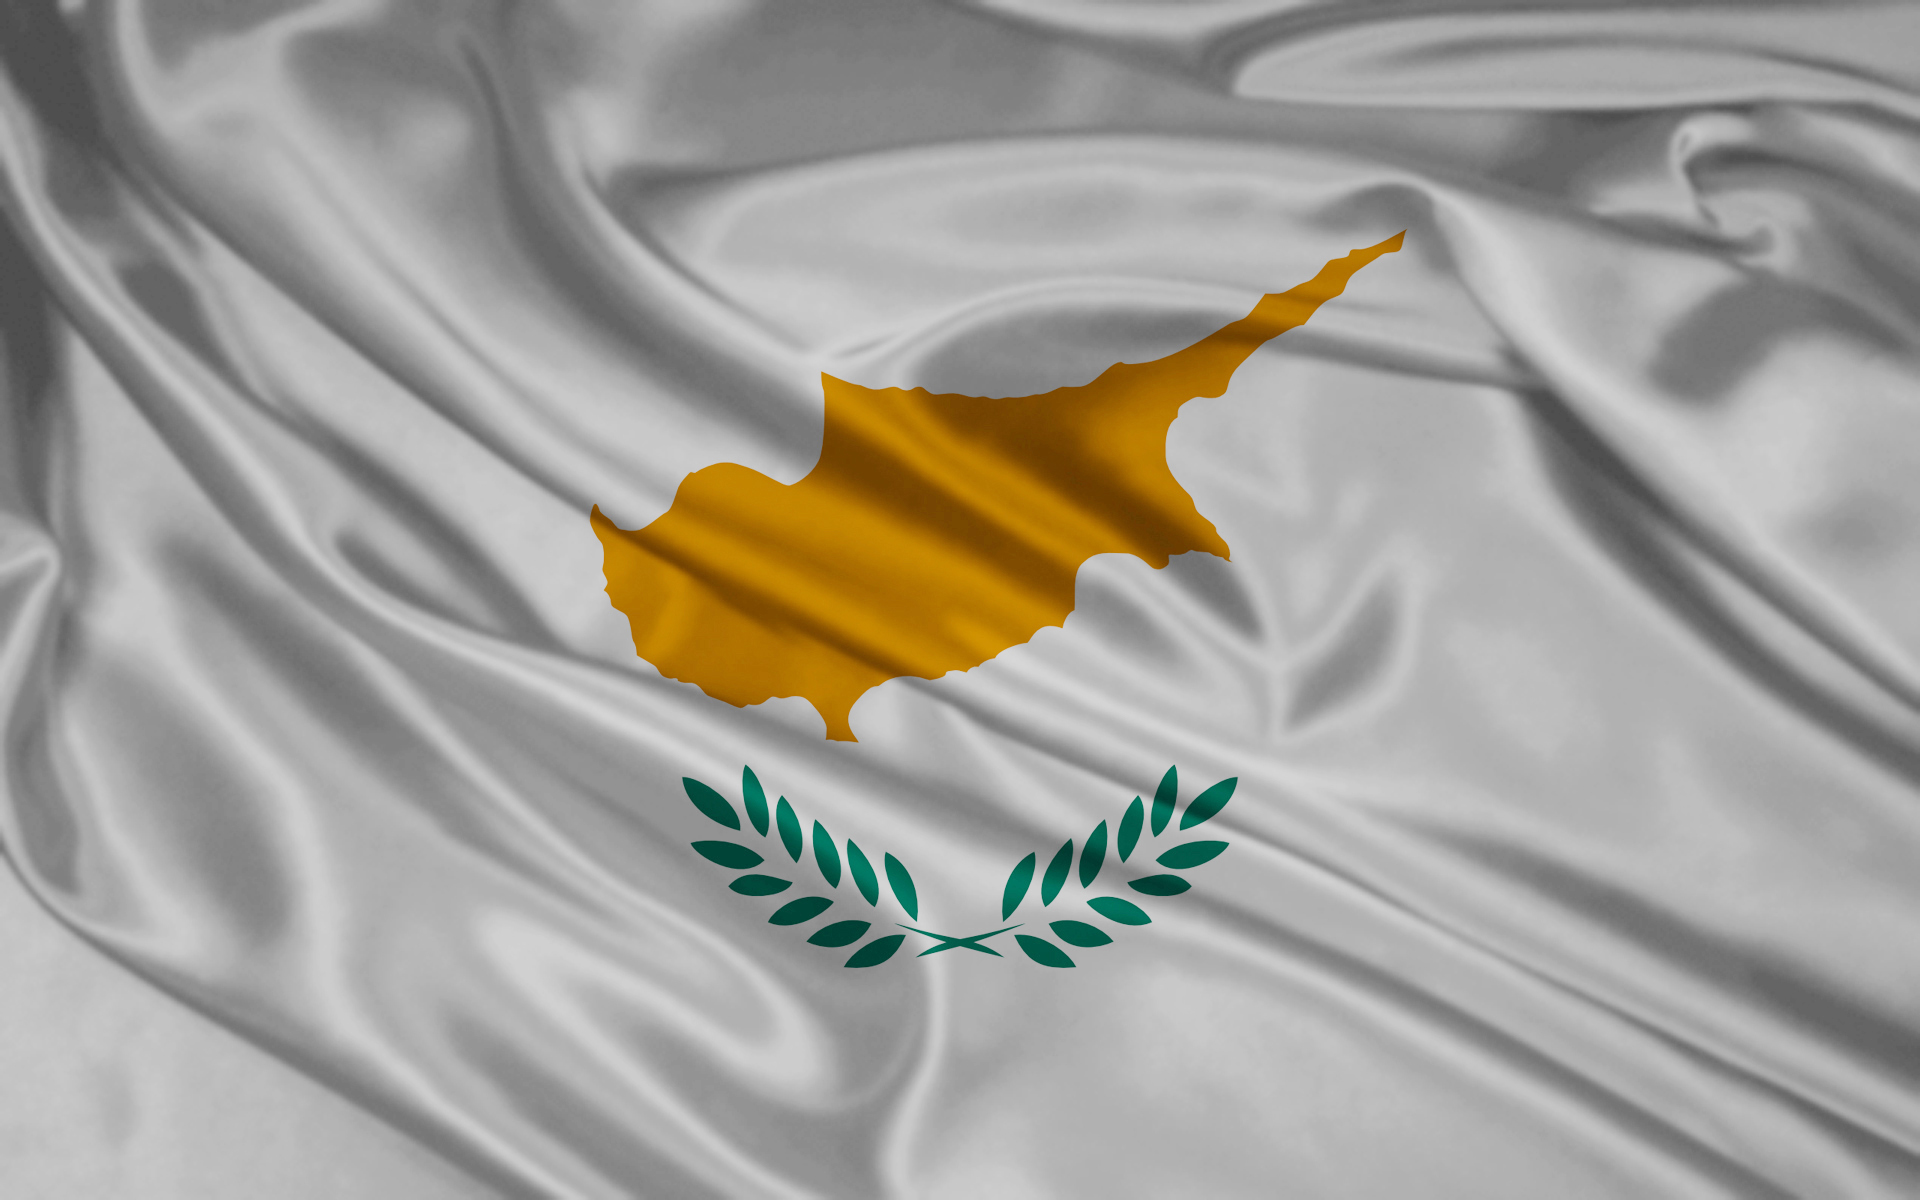 Αποκλείστηκε η Κύπρος από τη διεκδίκηση του Ευρωπαϊκού Οργανισμού Φαρμάκων